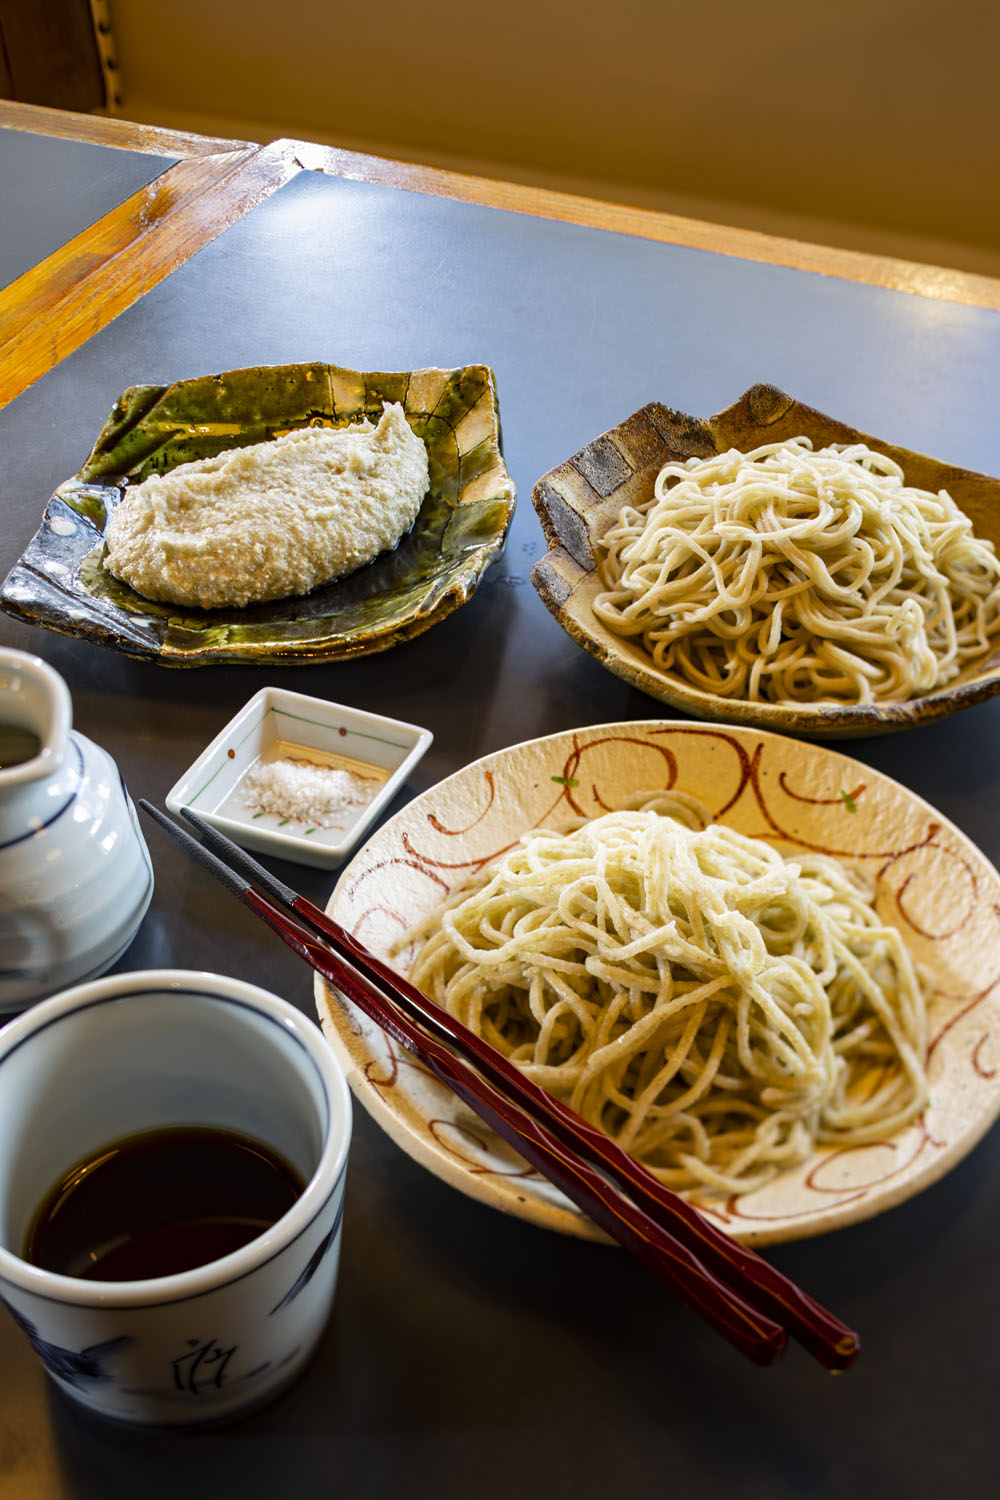 そばがき・二八・手挽きの味くらべ1200円。埼玉食材は、三芳町のソバほか。